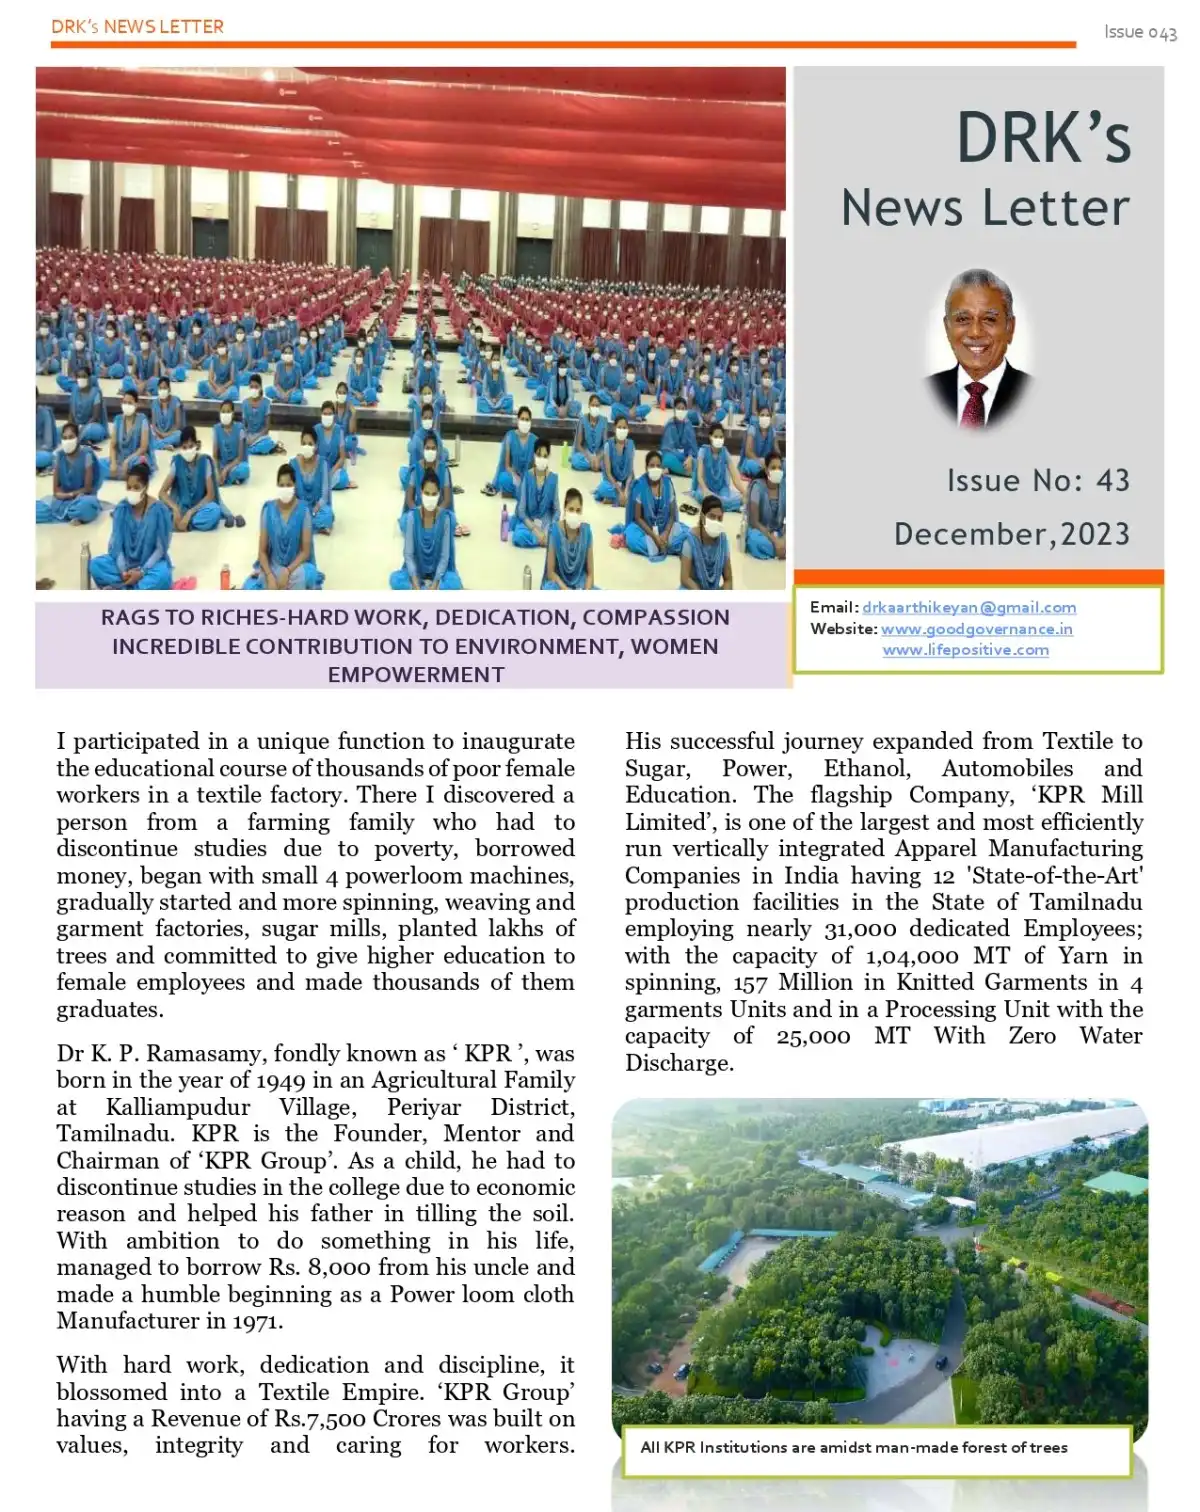 DRK's News Letter, December 2023